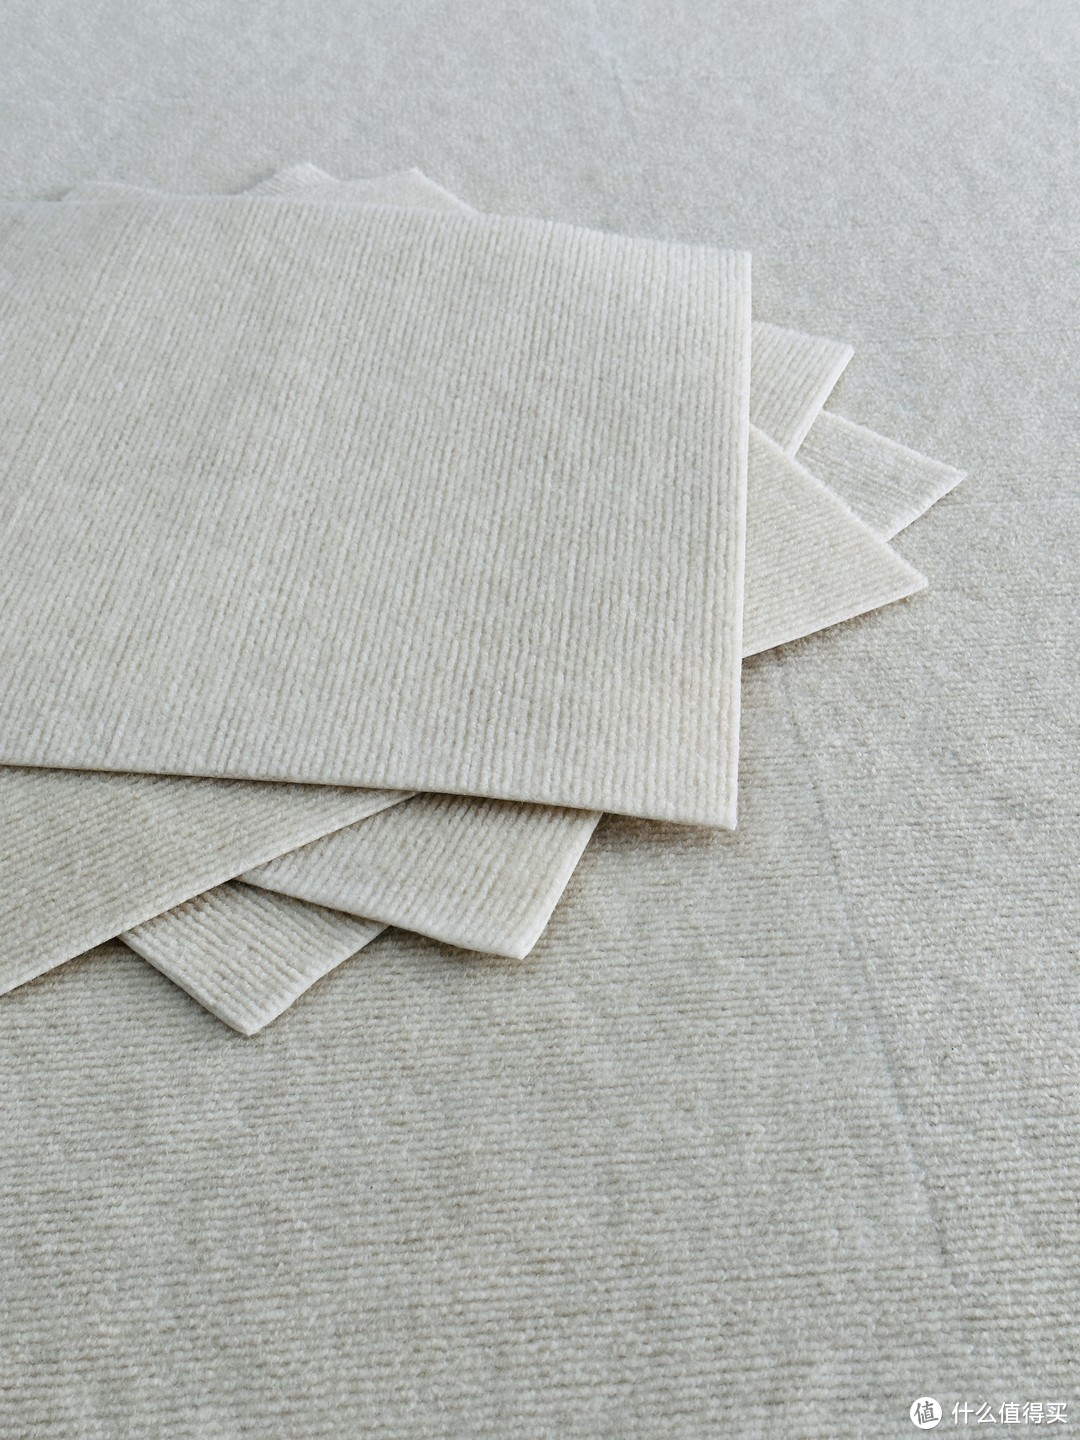 拼接地毯yyds✔️是谁发明的拼接地毯